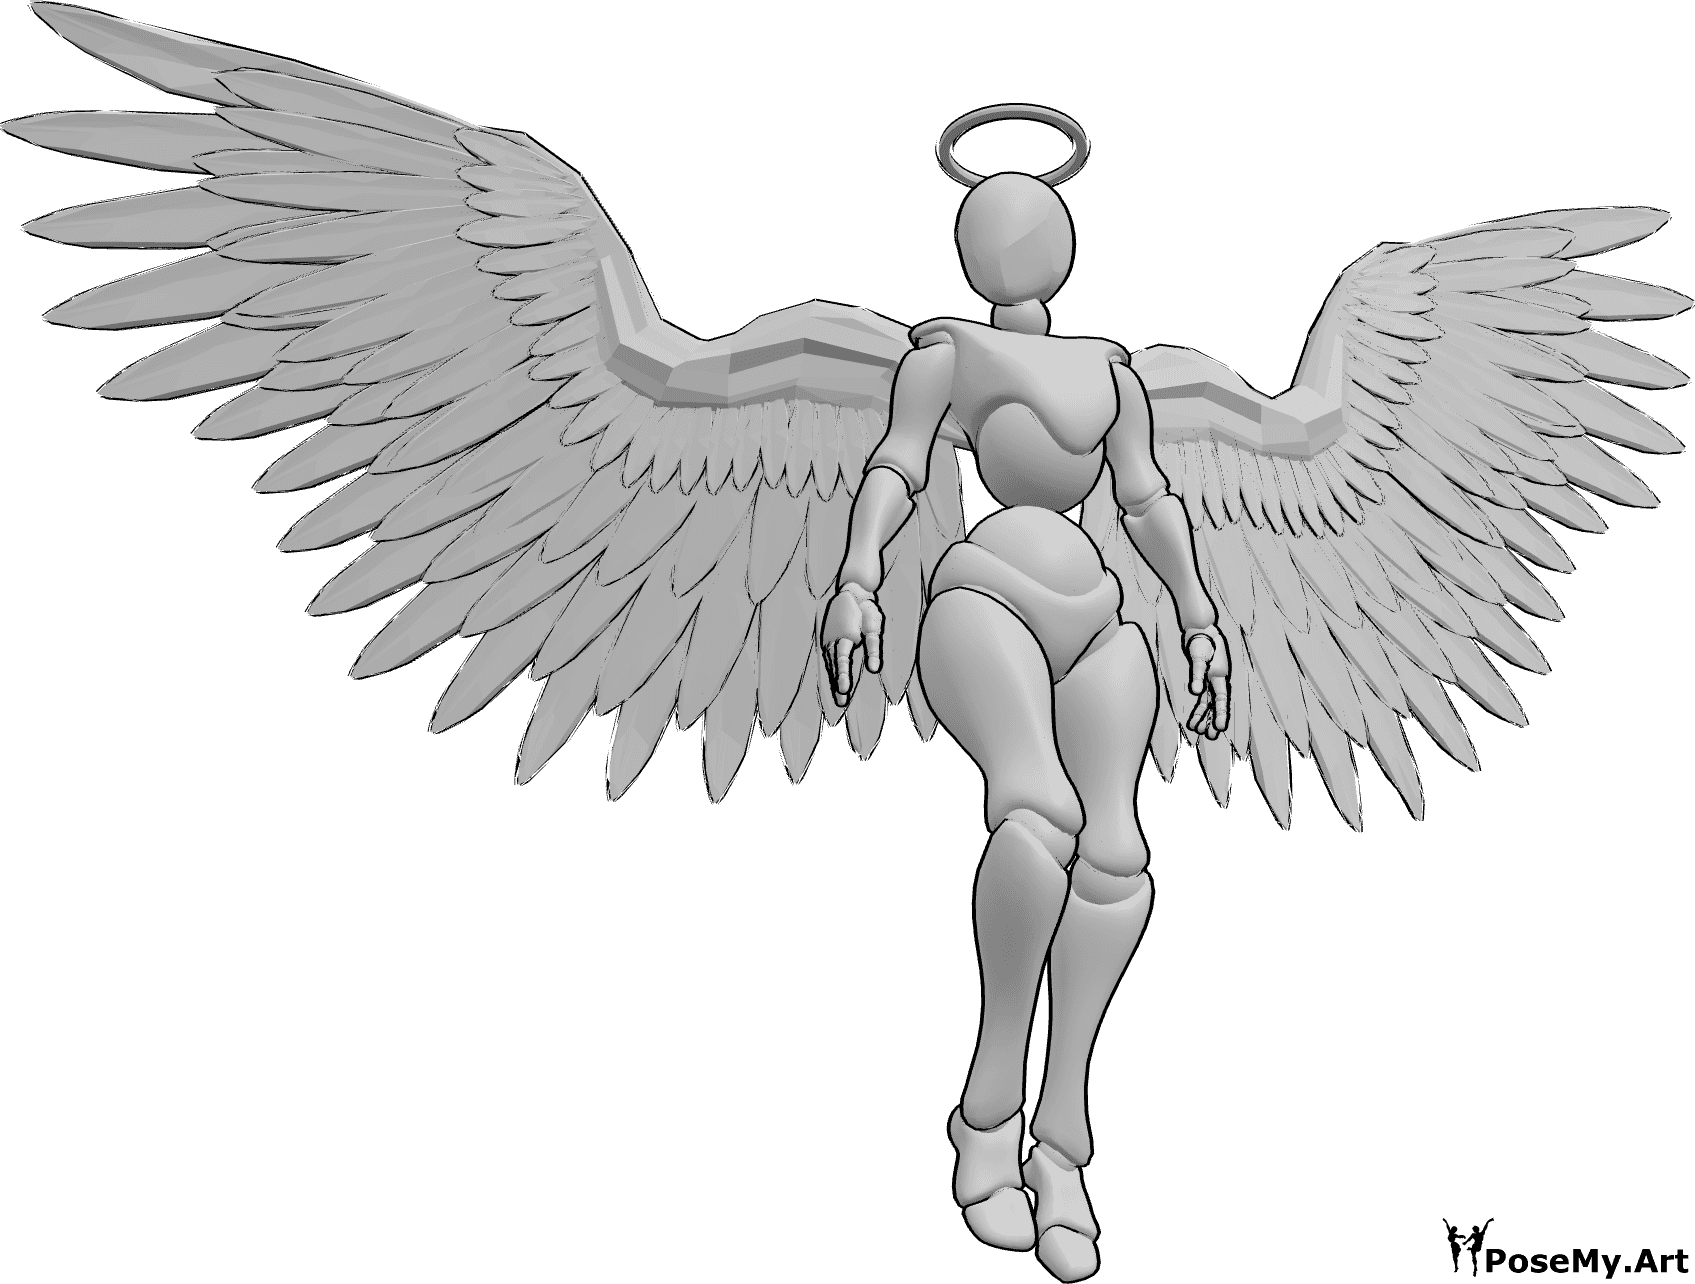 Riferimento alle pose- Posa delle ali di angelo femminile - Donna con ali d'angelo e aureola che fluttua nell'aria e guarda a destra